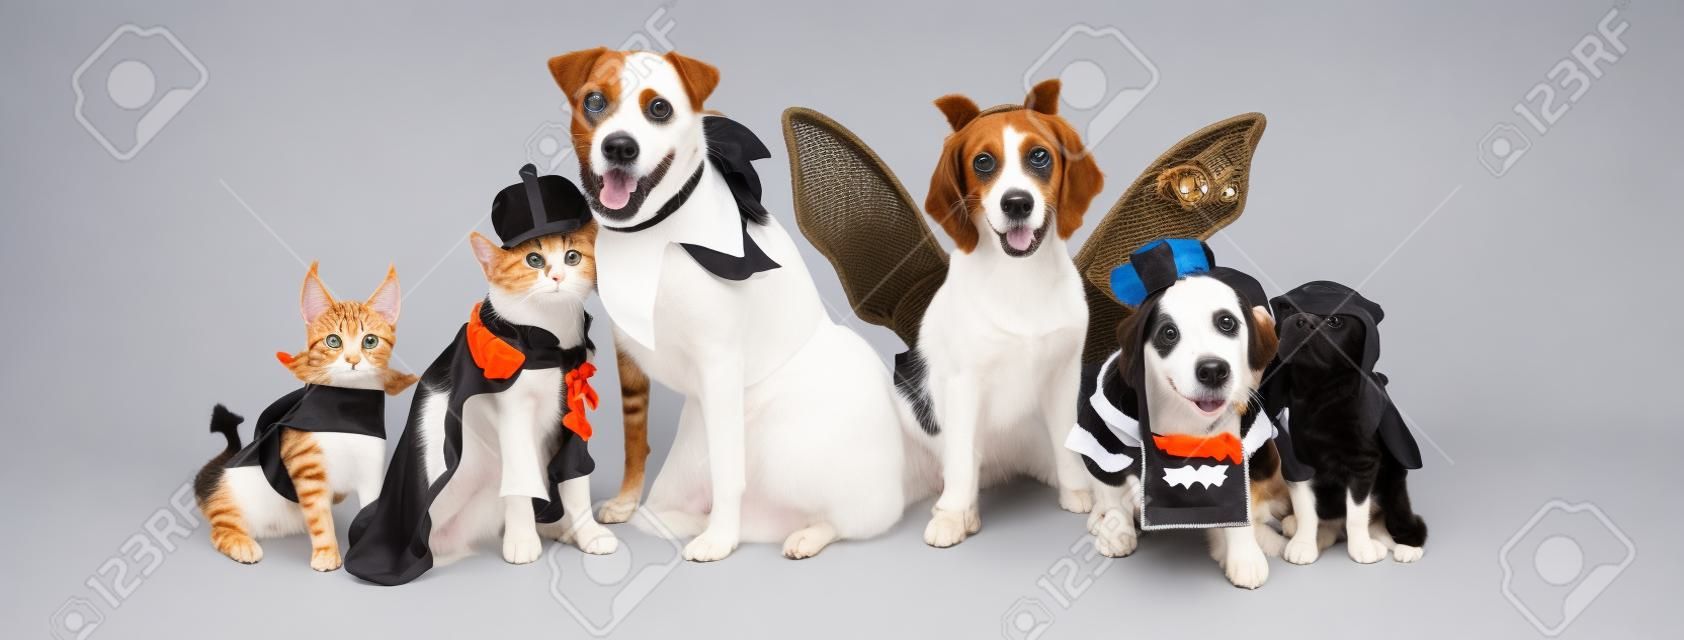 Fila de perros y gatos juntos vistiendo lindos disfraces de Halloween. Banner web o encabezado de redes sociales en blanco.